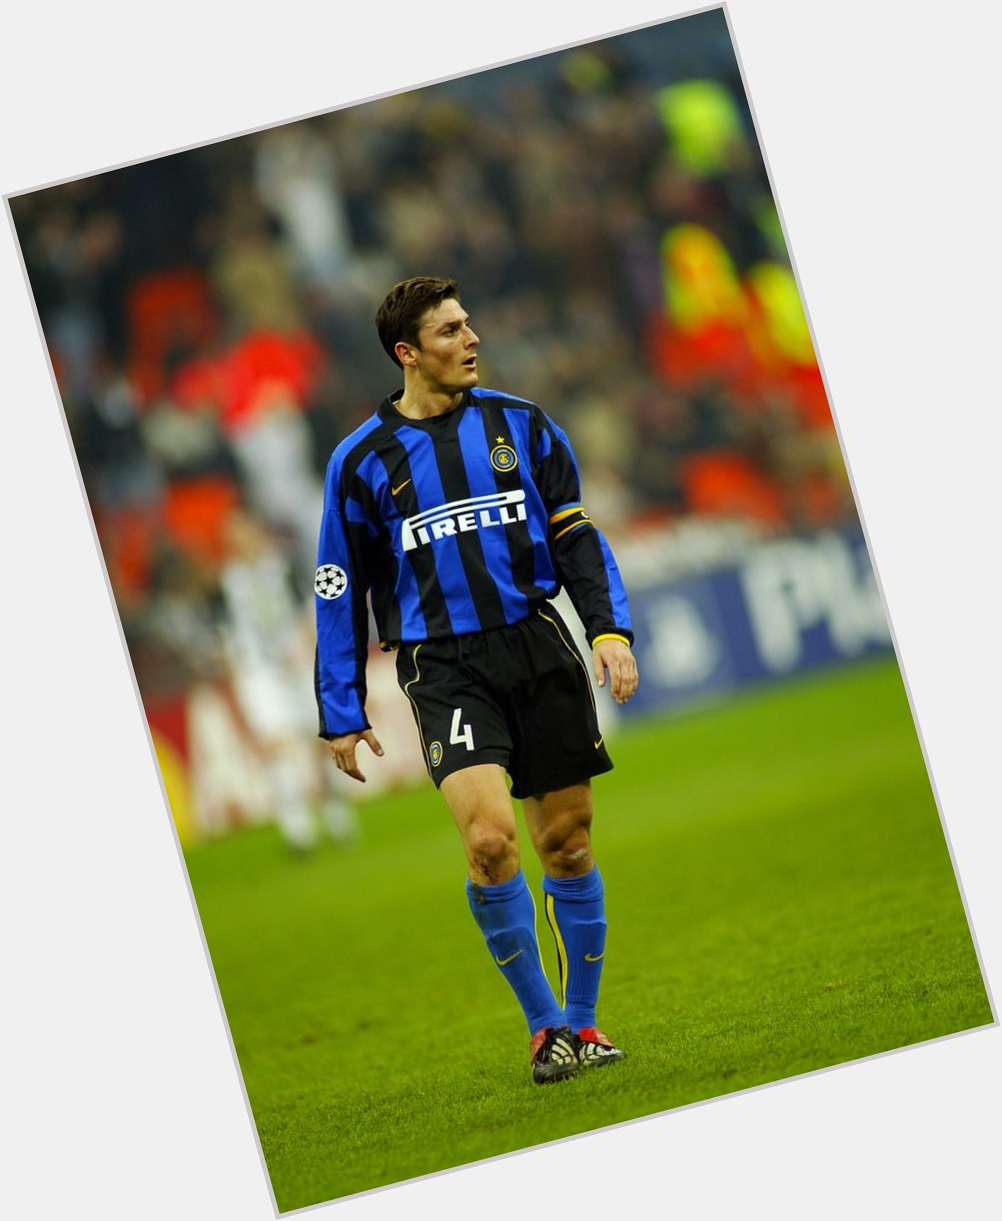 Http://fanpagepress.net/m/J/Javier Zanetti New Pic 3